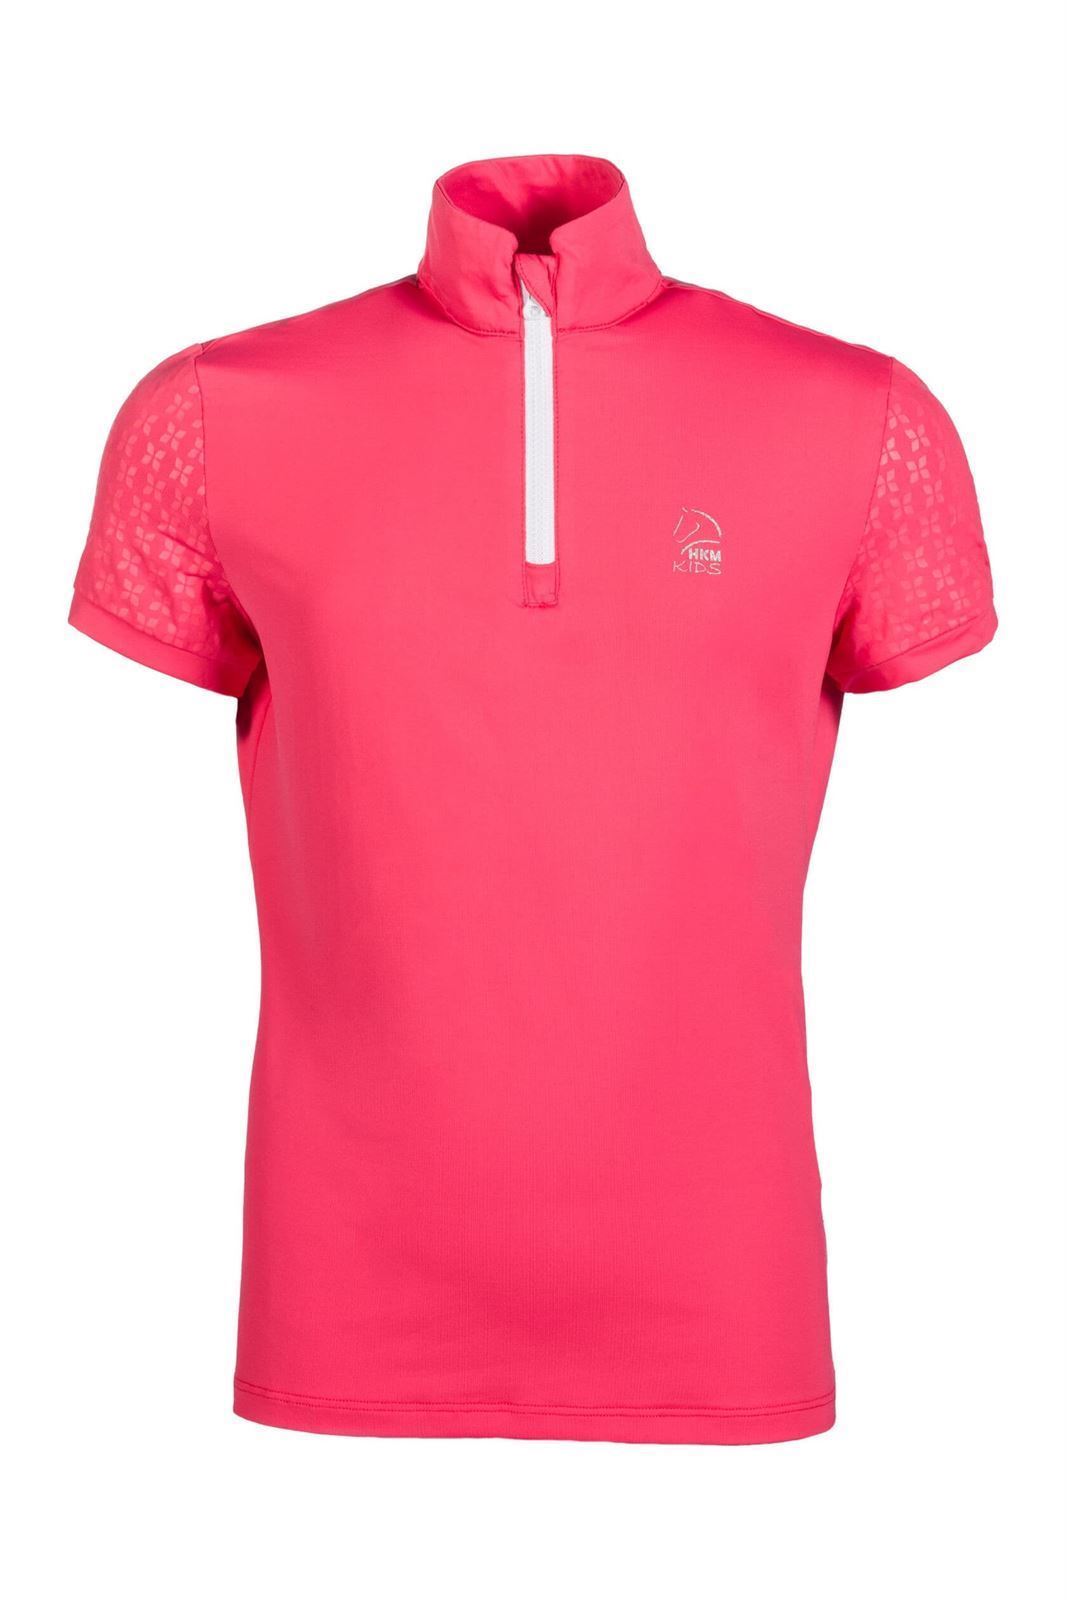 Camiseta técnica HKM Sports Equipment Aymee color rosa TALLA 140 (7-9 años) - Imagen 4